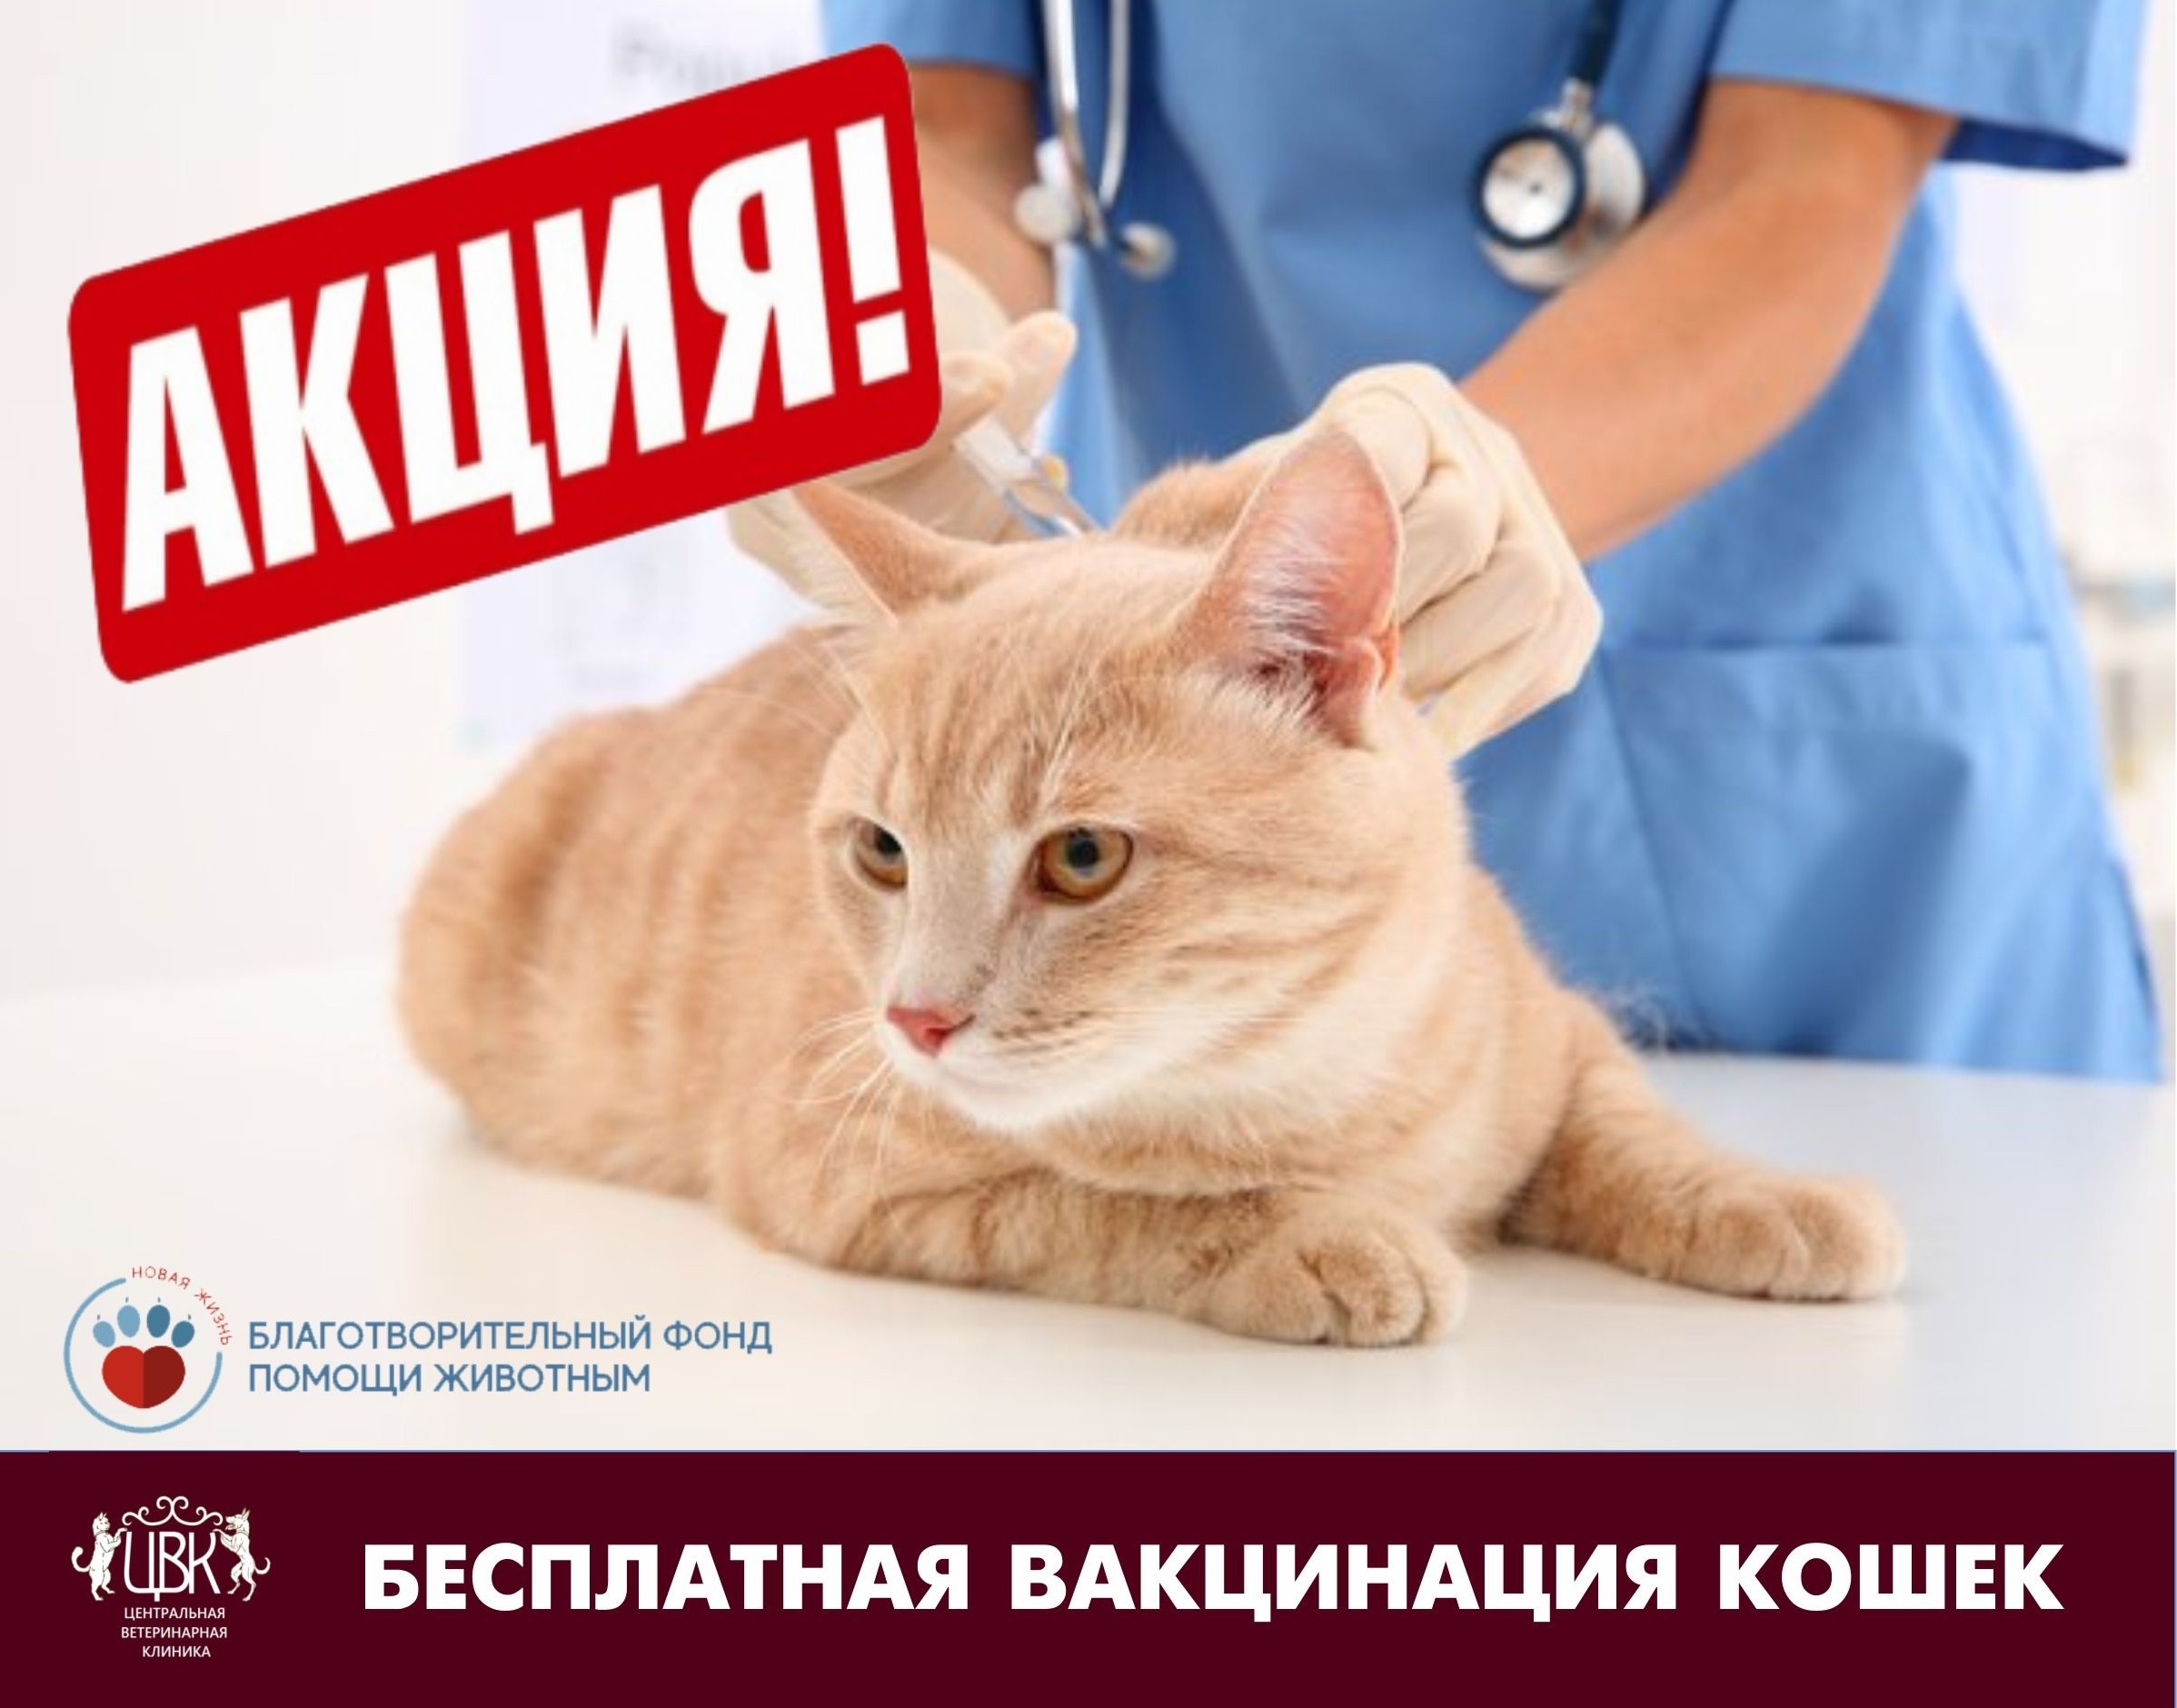 Сколько стоят прививки для кошек. Вакцинация кошек. Прививки для кошек. Вакцинация кошки клиника. Вакцины для кошек акция.